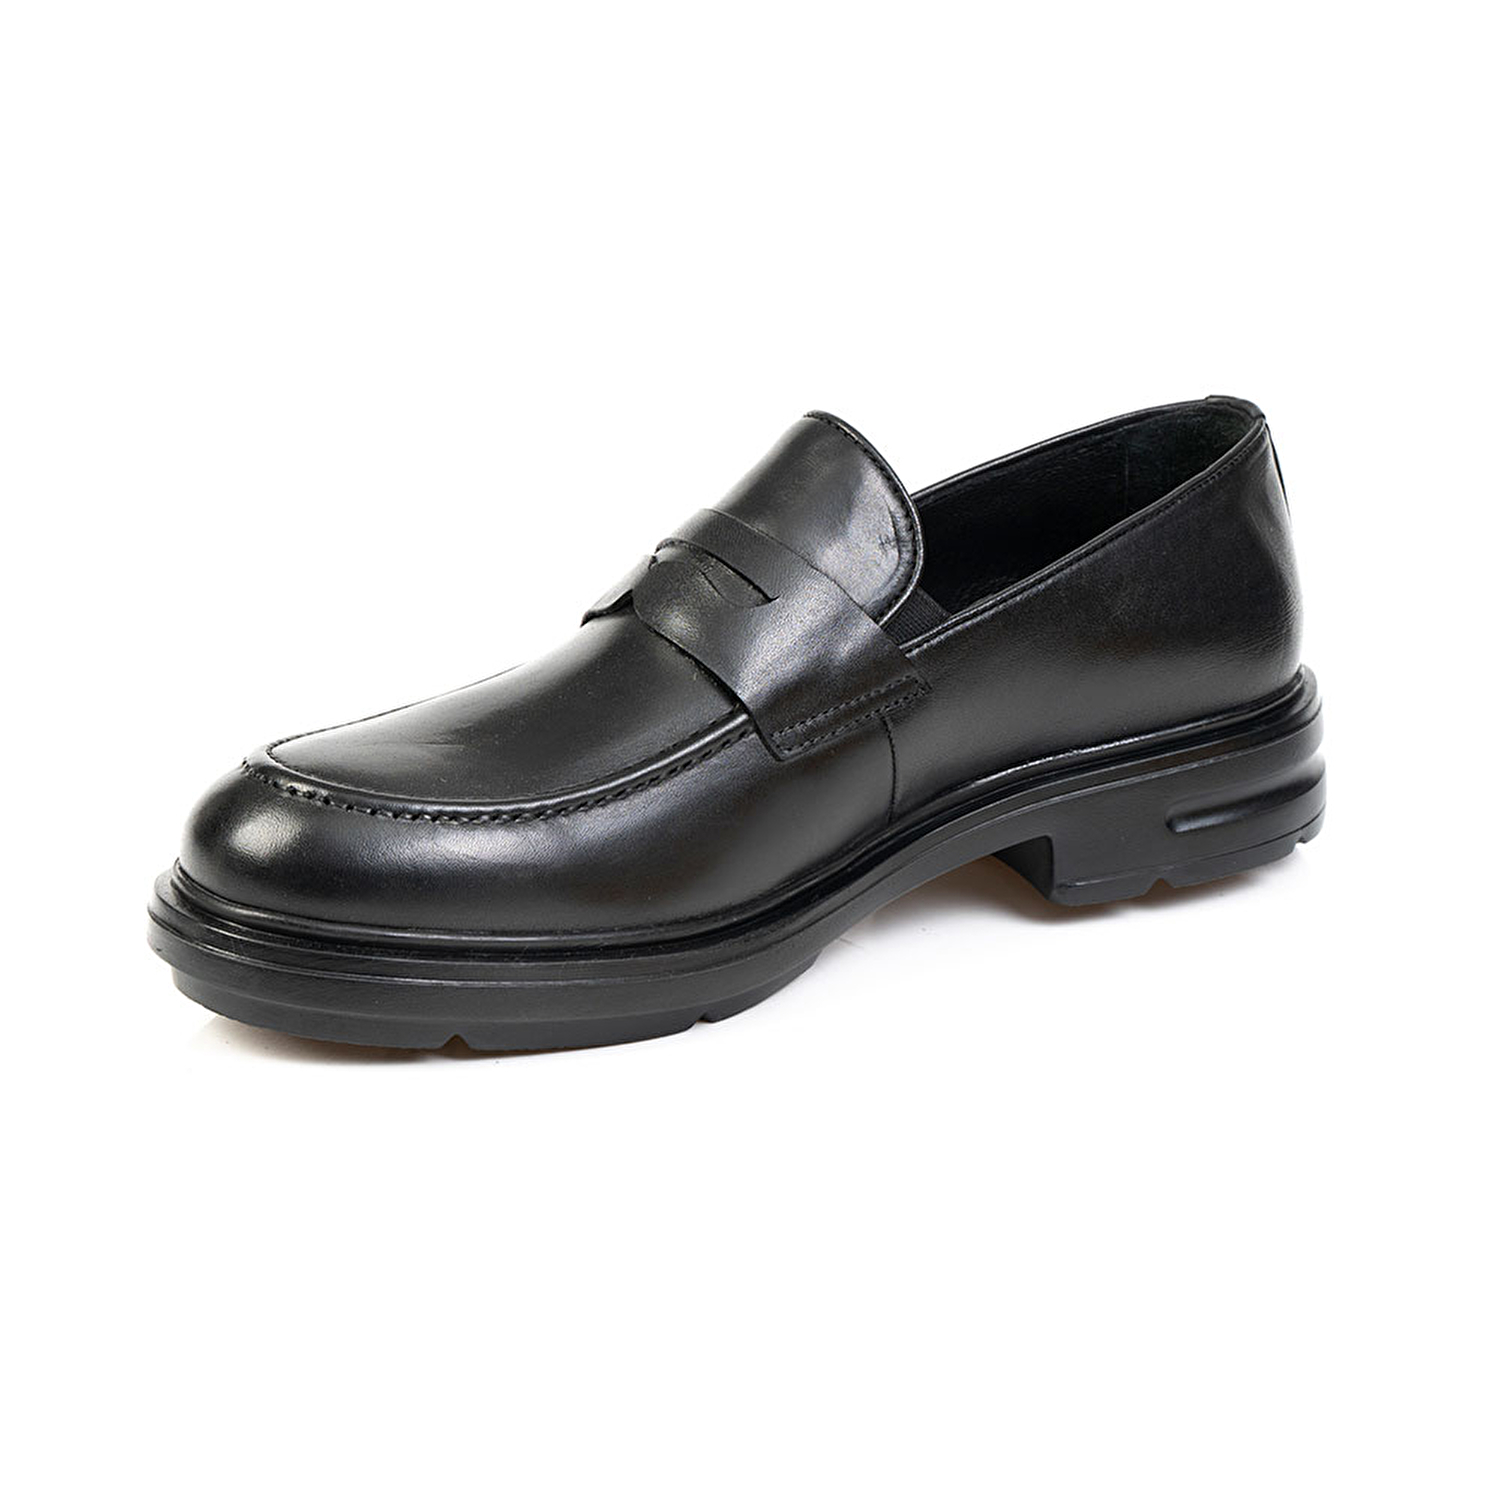 Klasik Erkek Ayakkabı Siyah Deri 67797-3